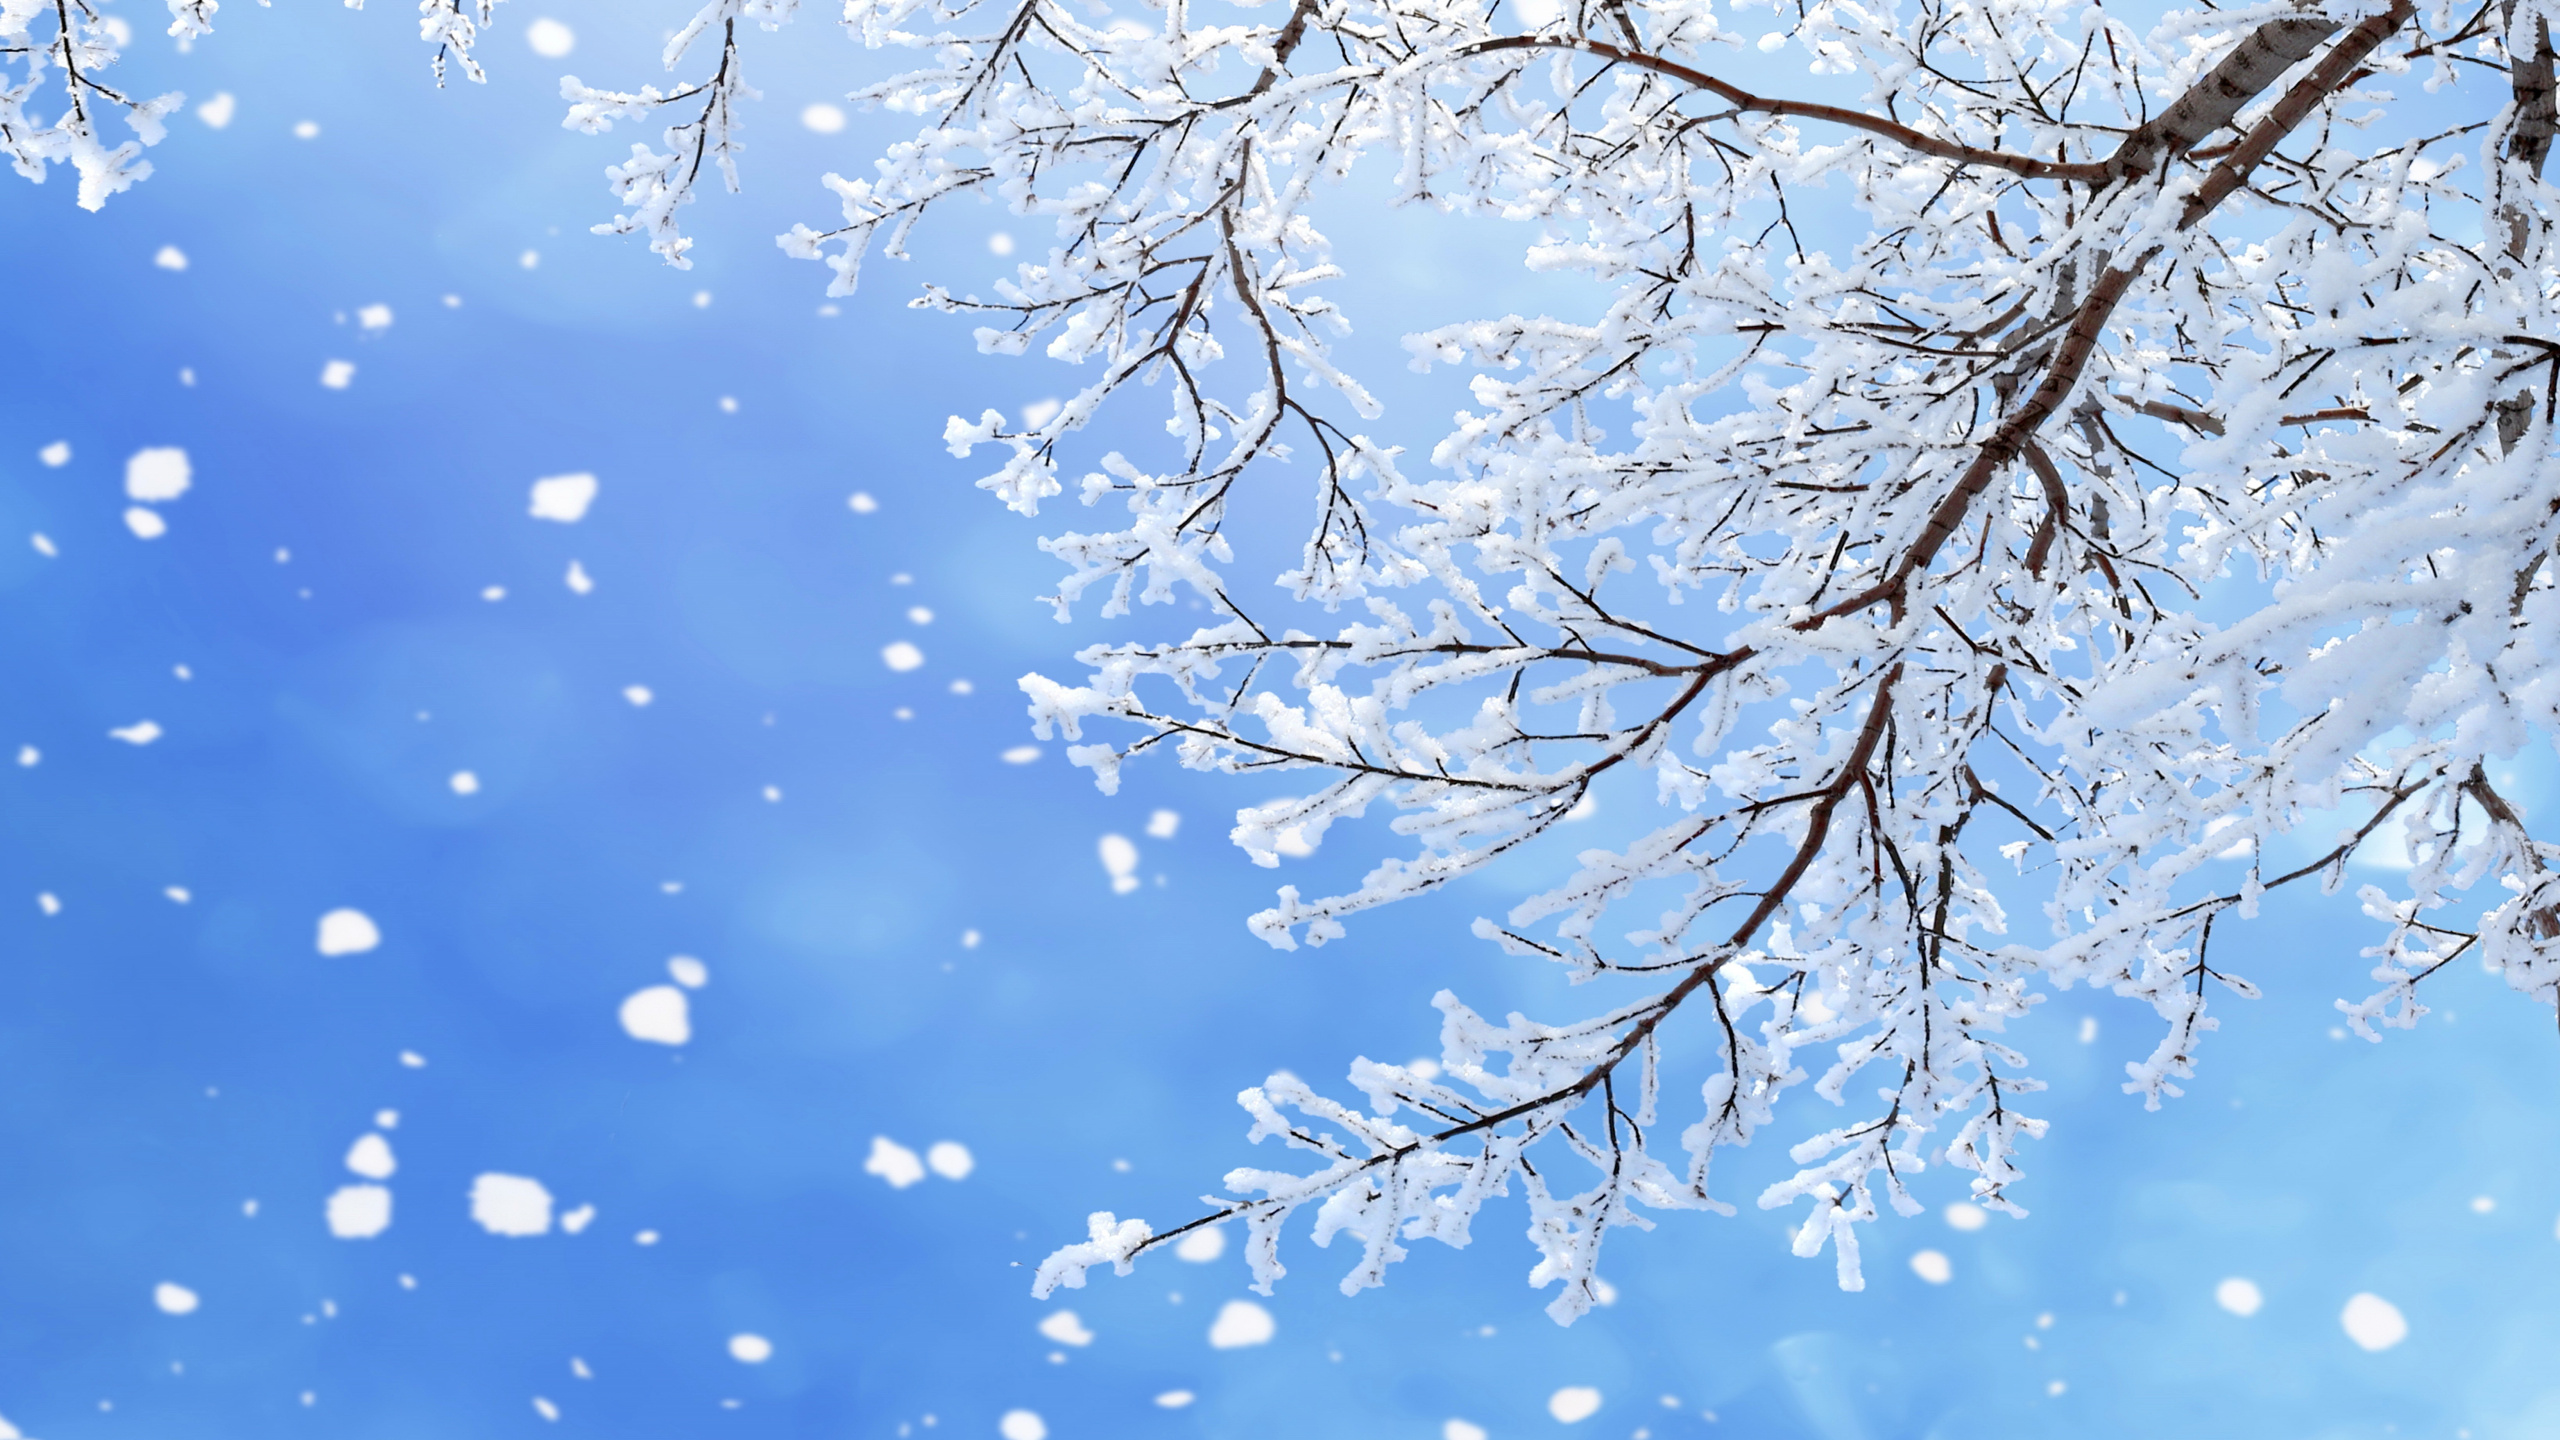 冬天, 树枝, 雪花, 季节, 冻结 壁纸 2560x1440 允许